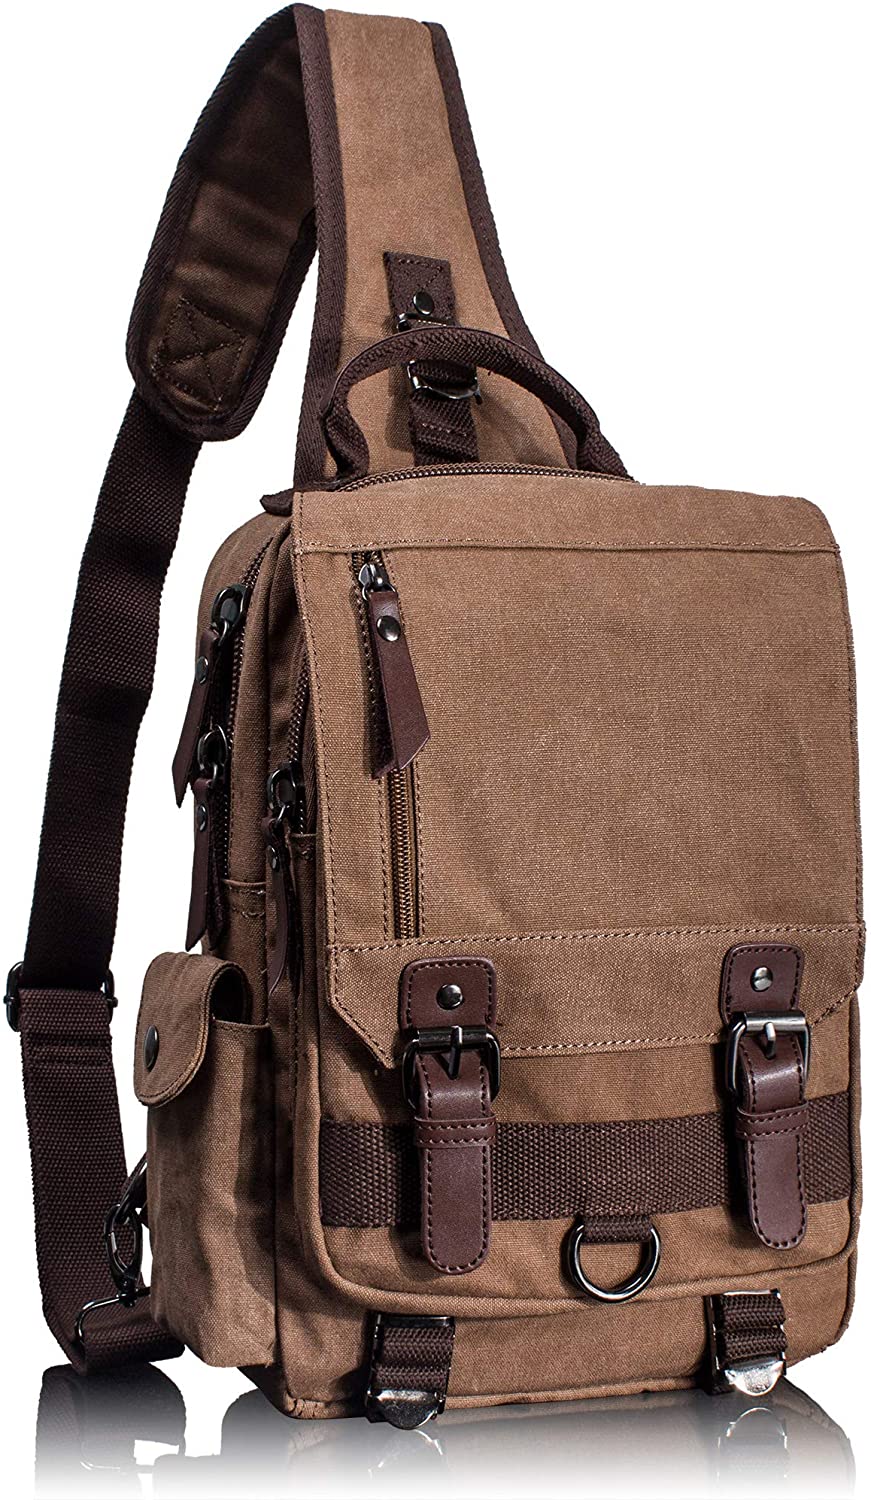 Leaper Canvas Messenger Bag Sling Bag Cross Body Bag Shoulder Bag Black, L